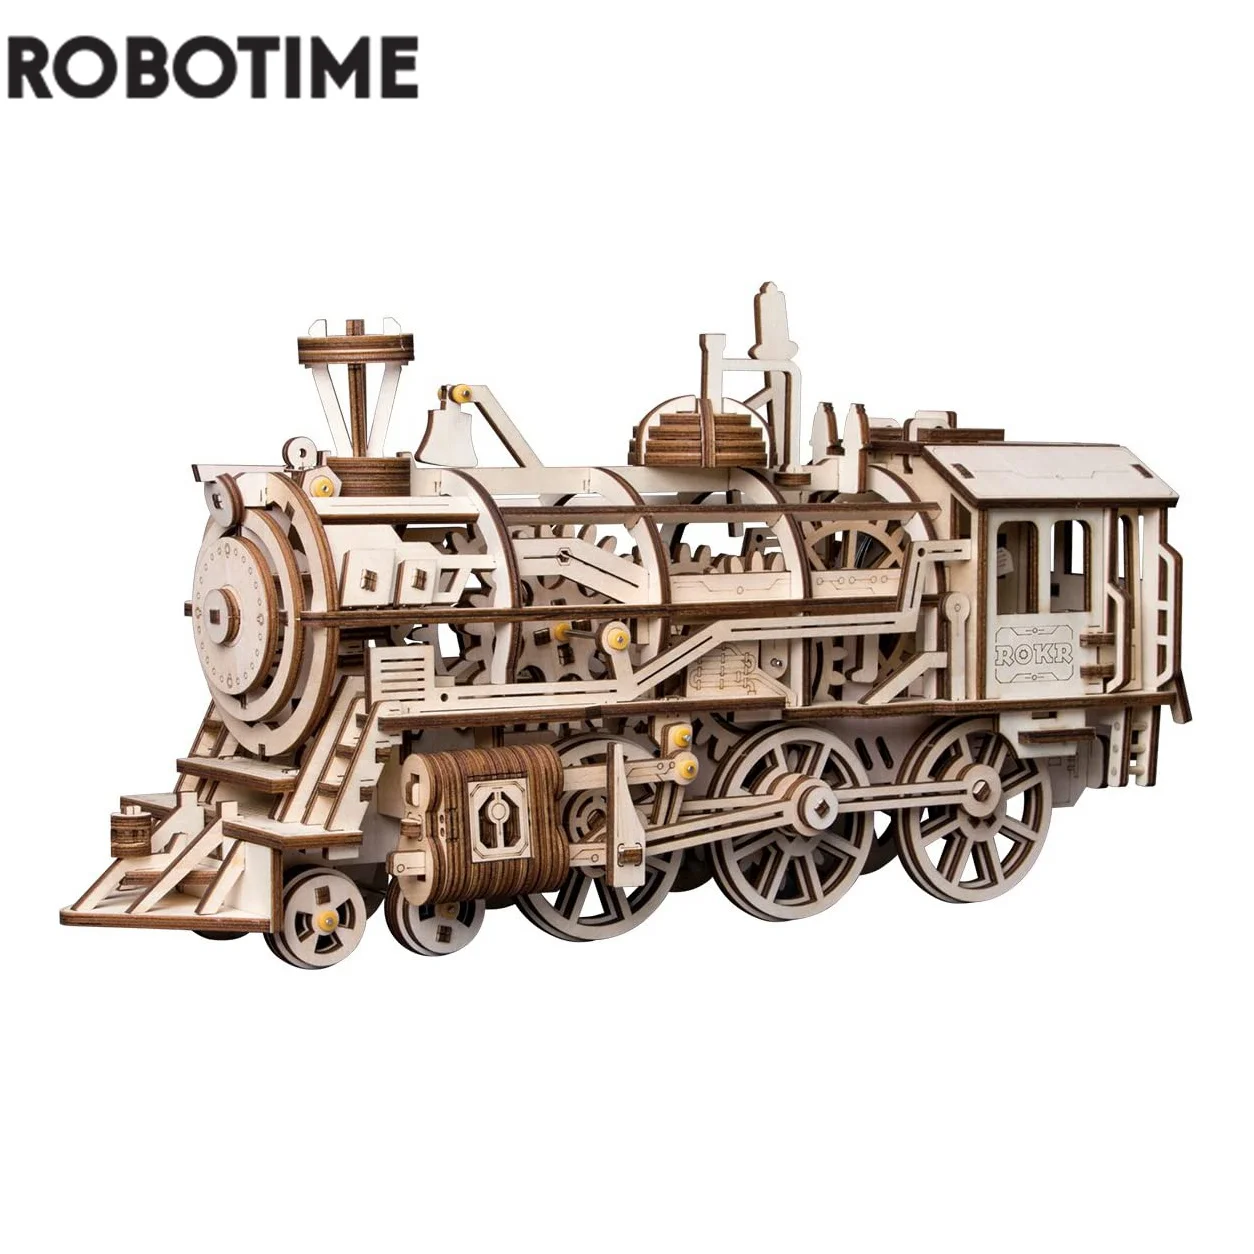 Robotime – Kit De Construction De Maquettes En Bois, 424 Pièces